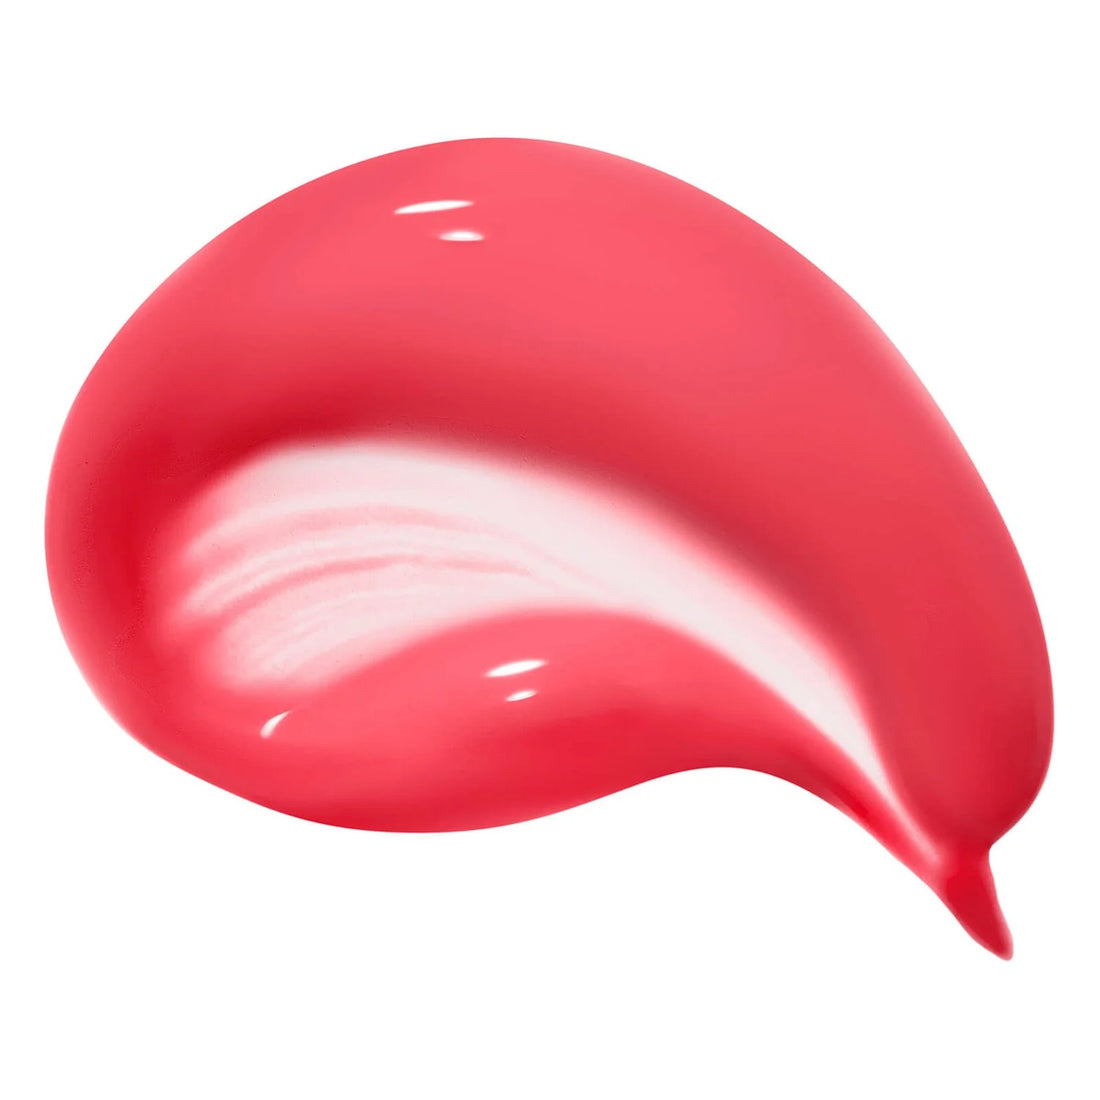 Benefit Playtint Pink-Lemonade Lip and Cheek Stain 6ml